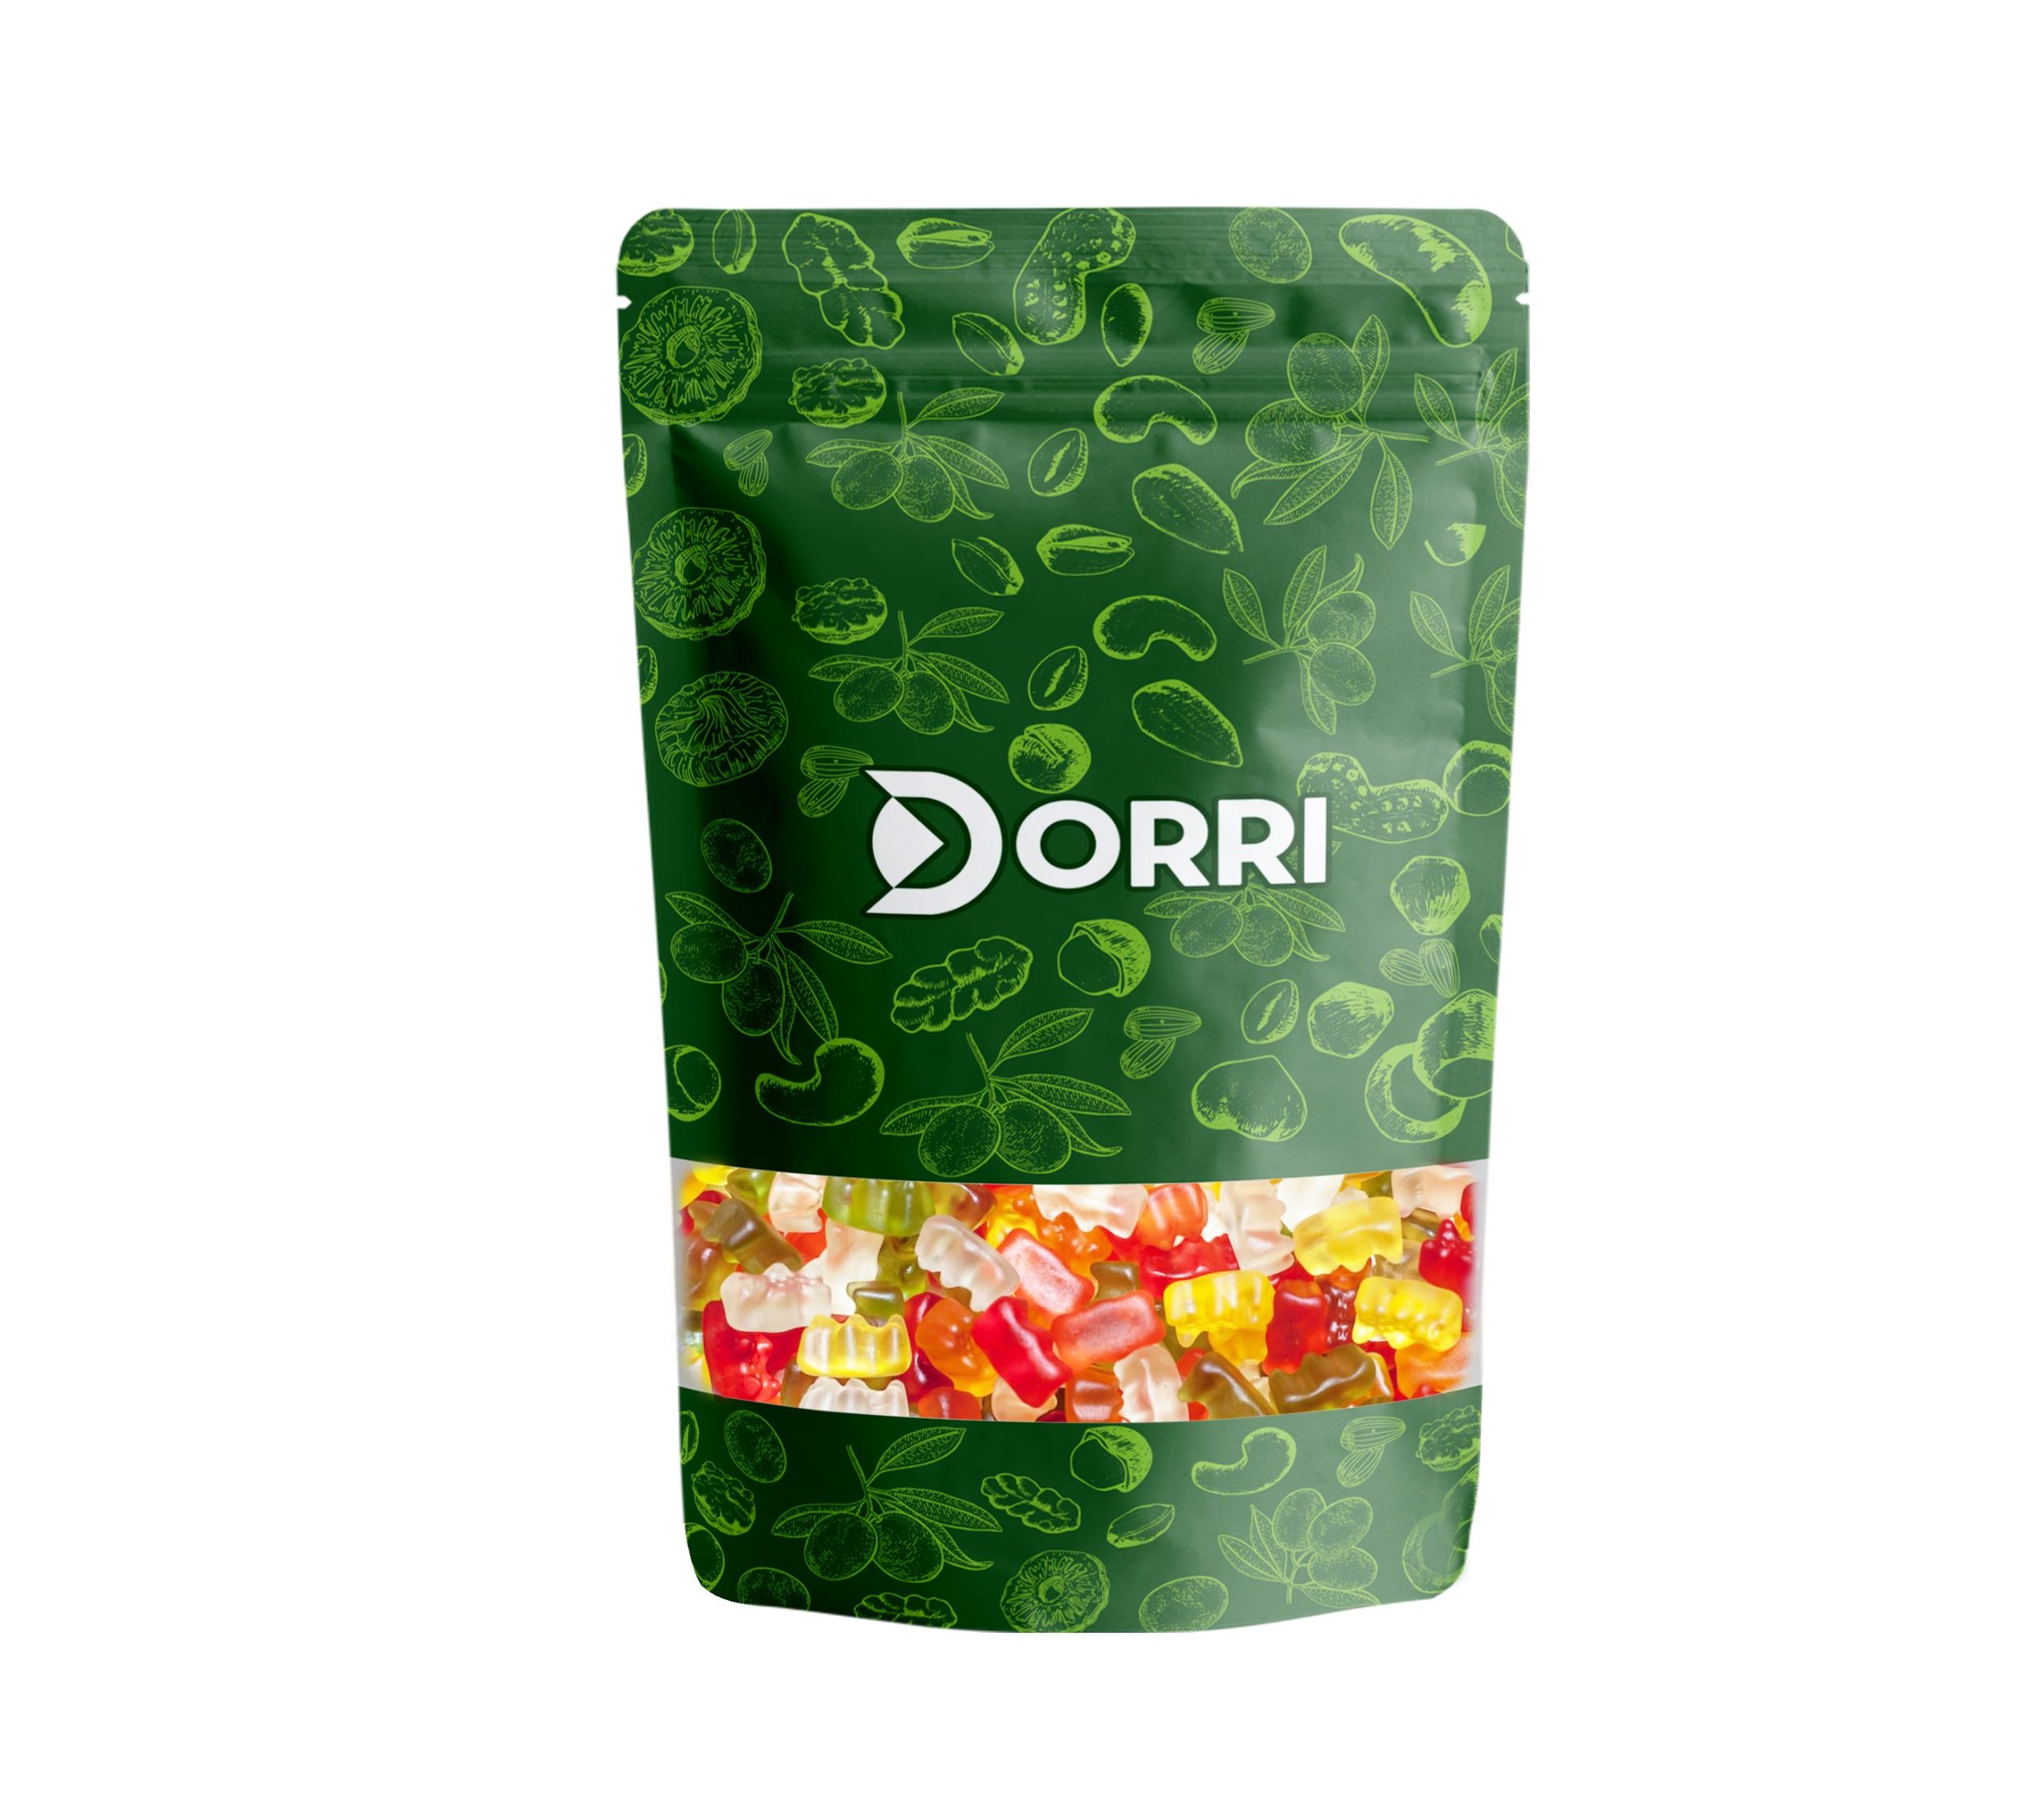 Dorri - Gummy Bears